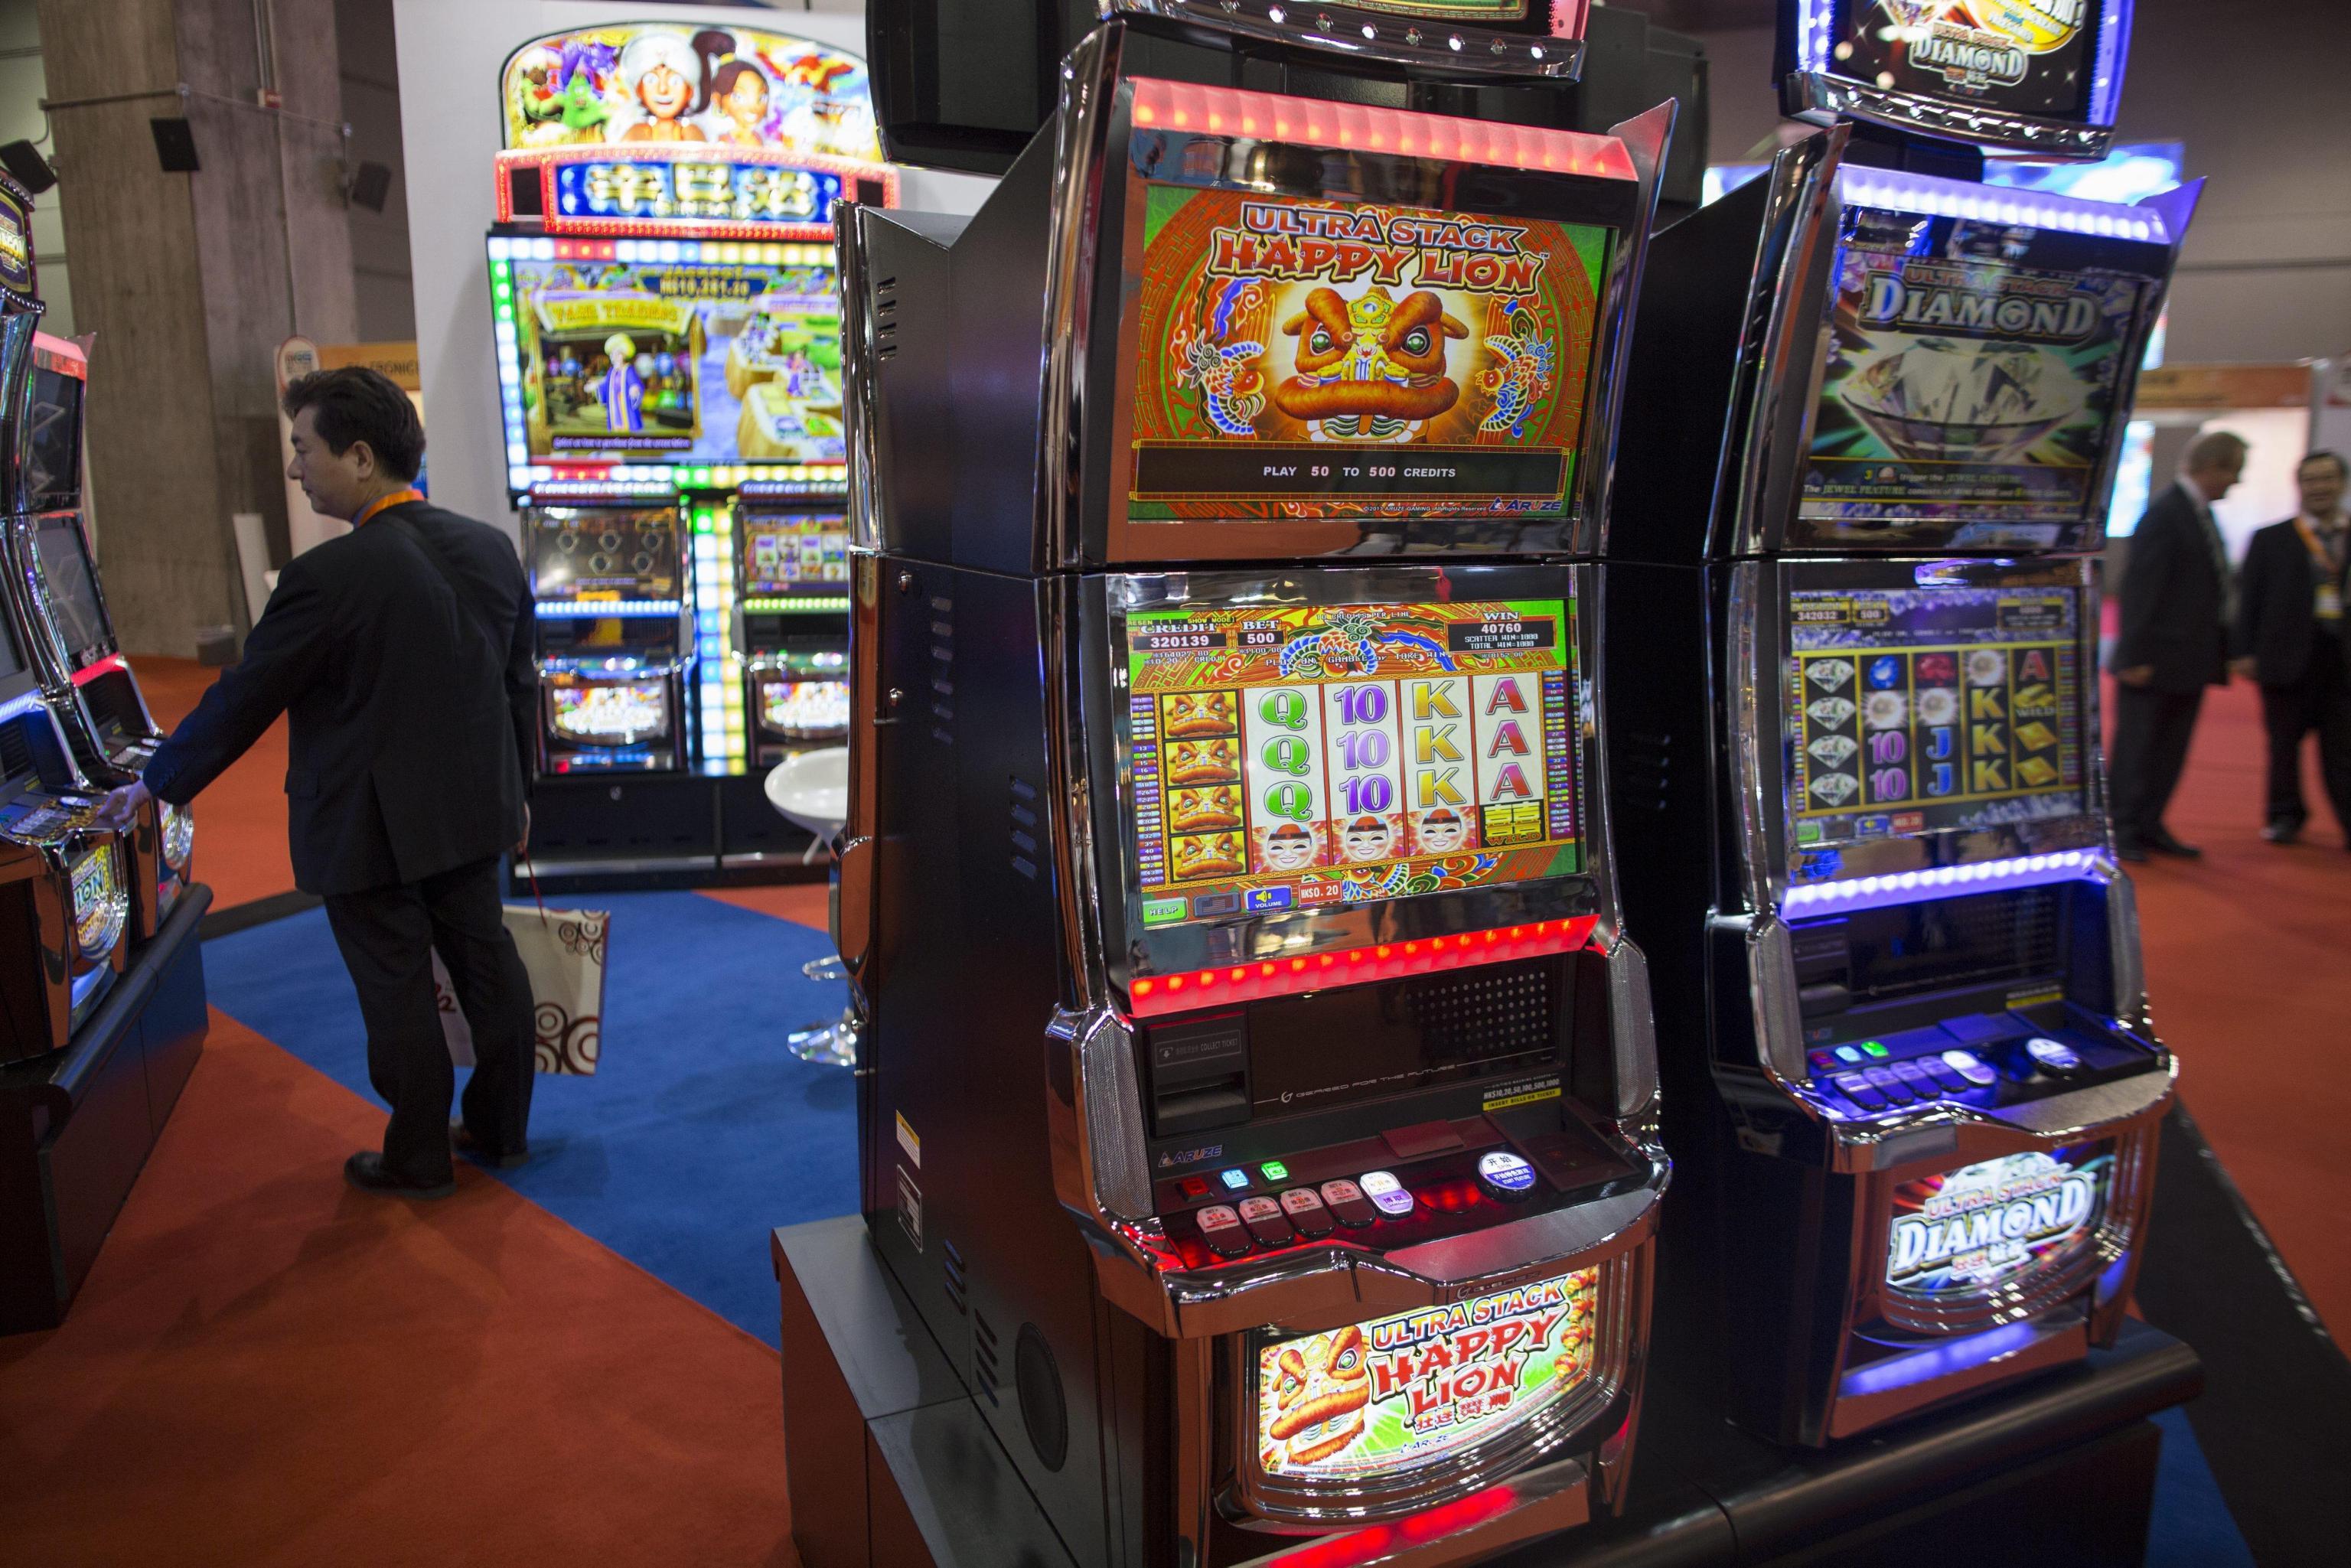 Niente slot e scommesse, parziale marcia indietro sul gioco d'azzardo